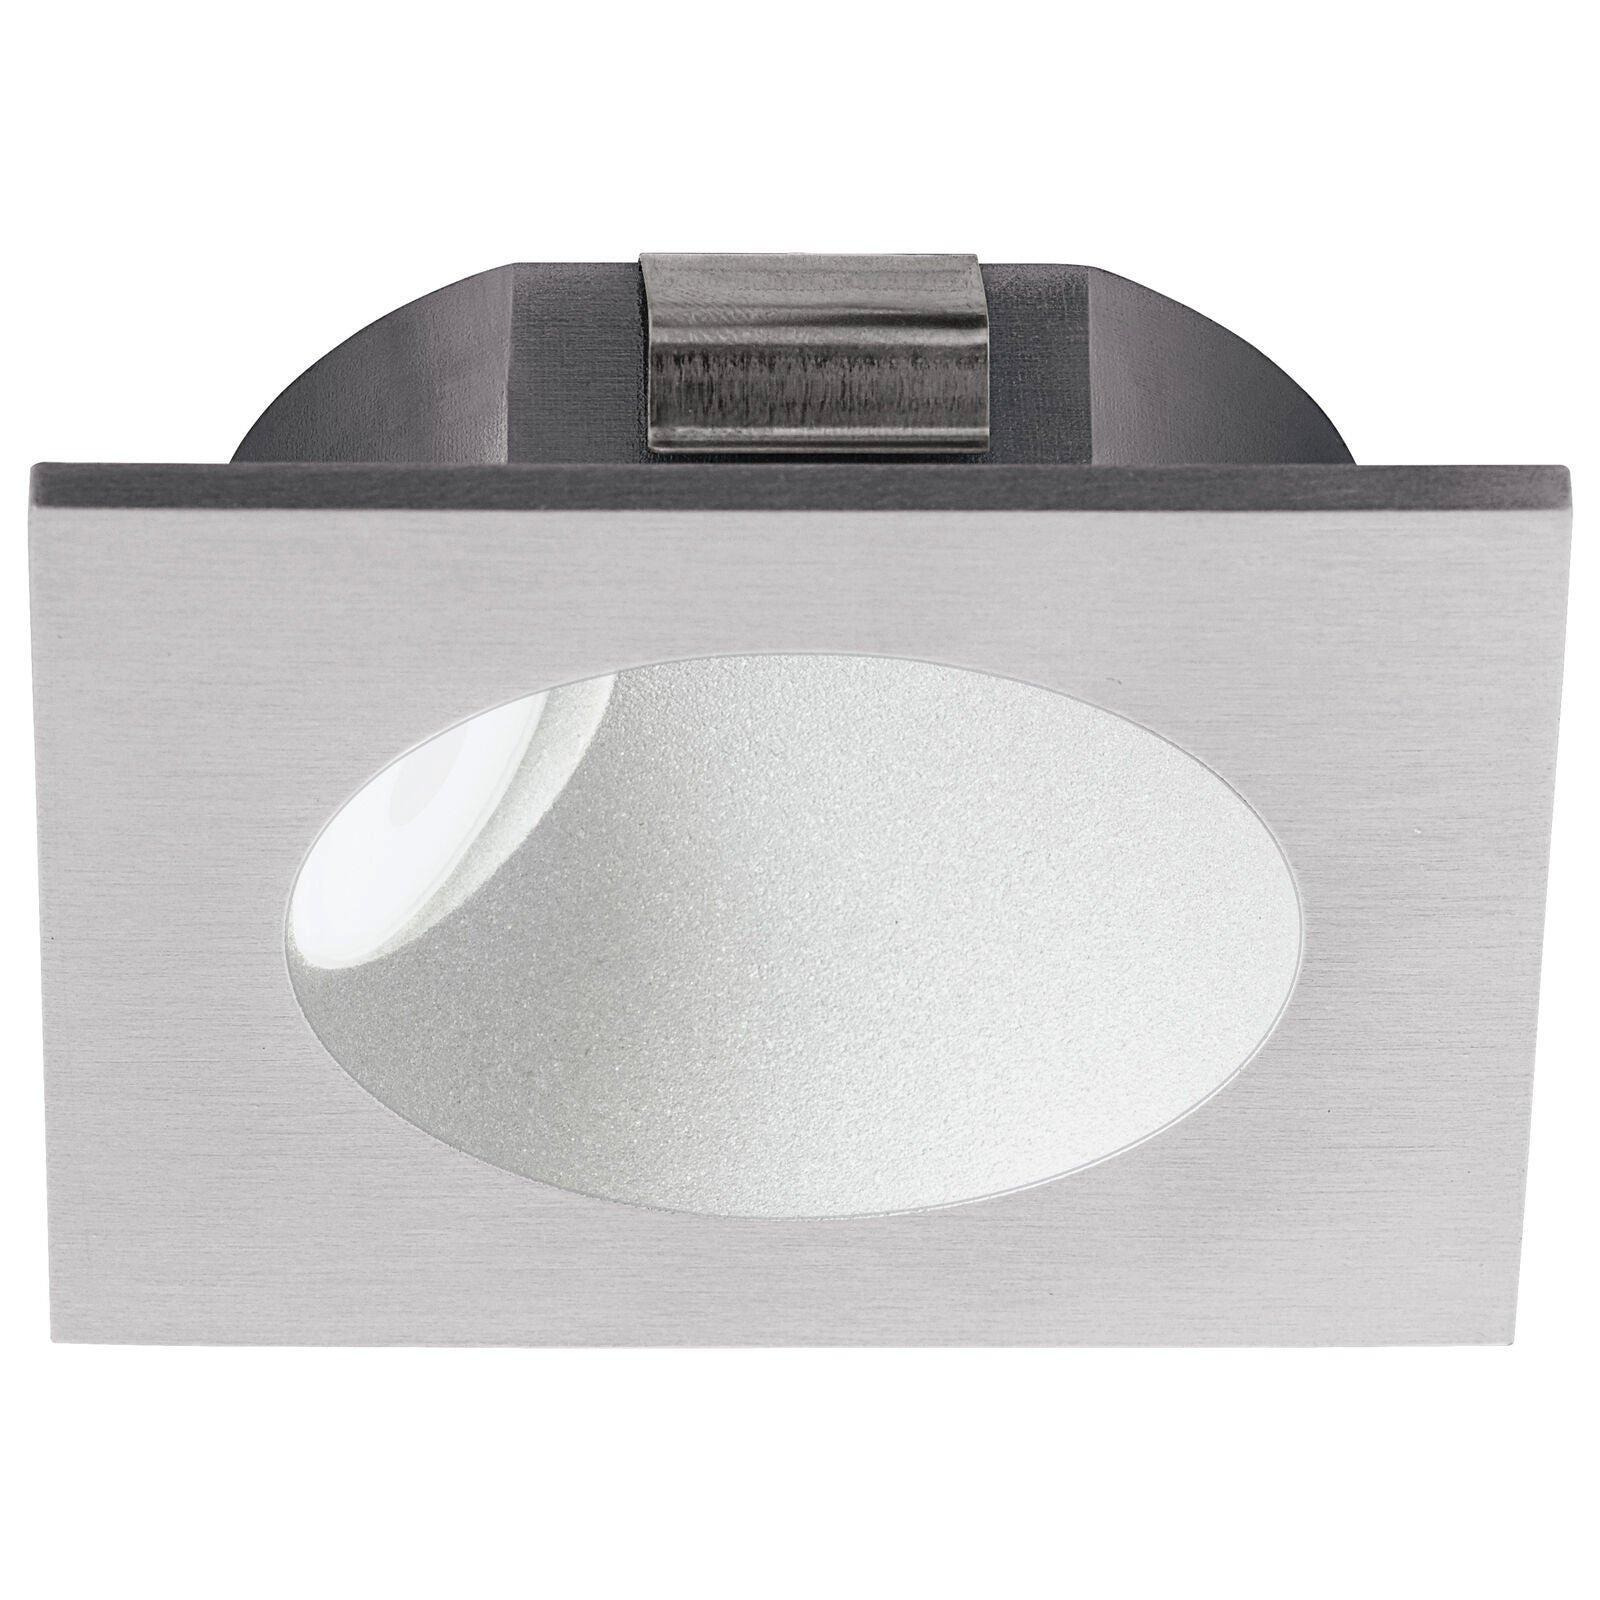 Wall / Ceiling Flush Downlight Silver Spotlight Aluminium 2W Built in LED - image 1